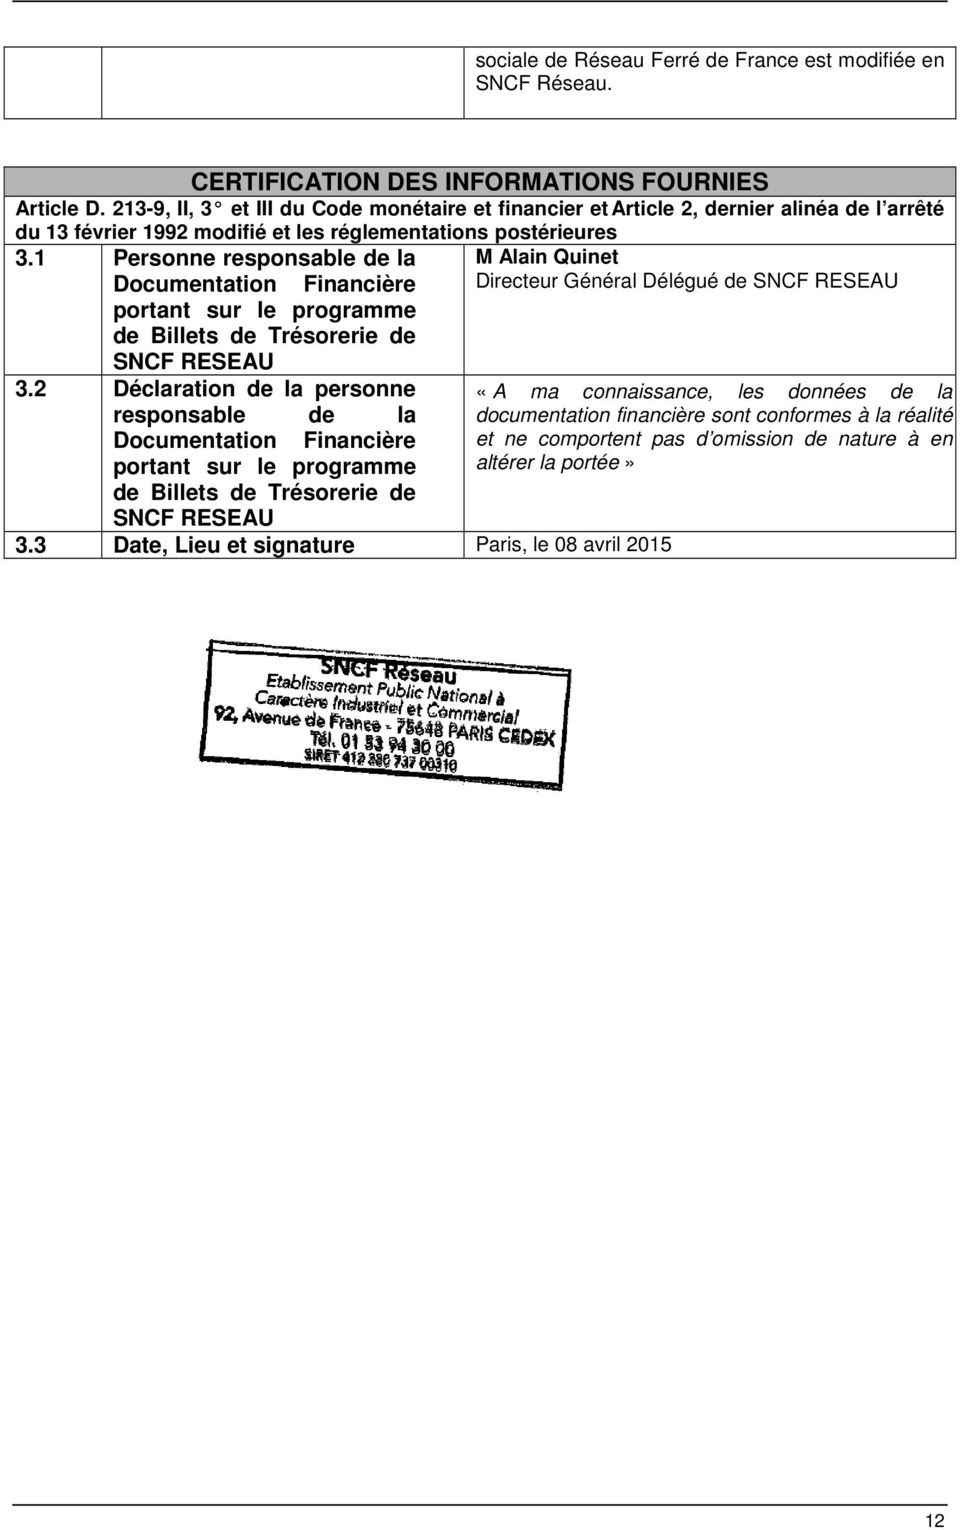 1 Personne responsable de la Documentation Financière portant sur le programme de Billets de Trésorerie de SNCF RESEAU 3.